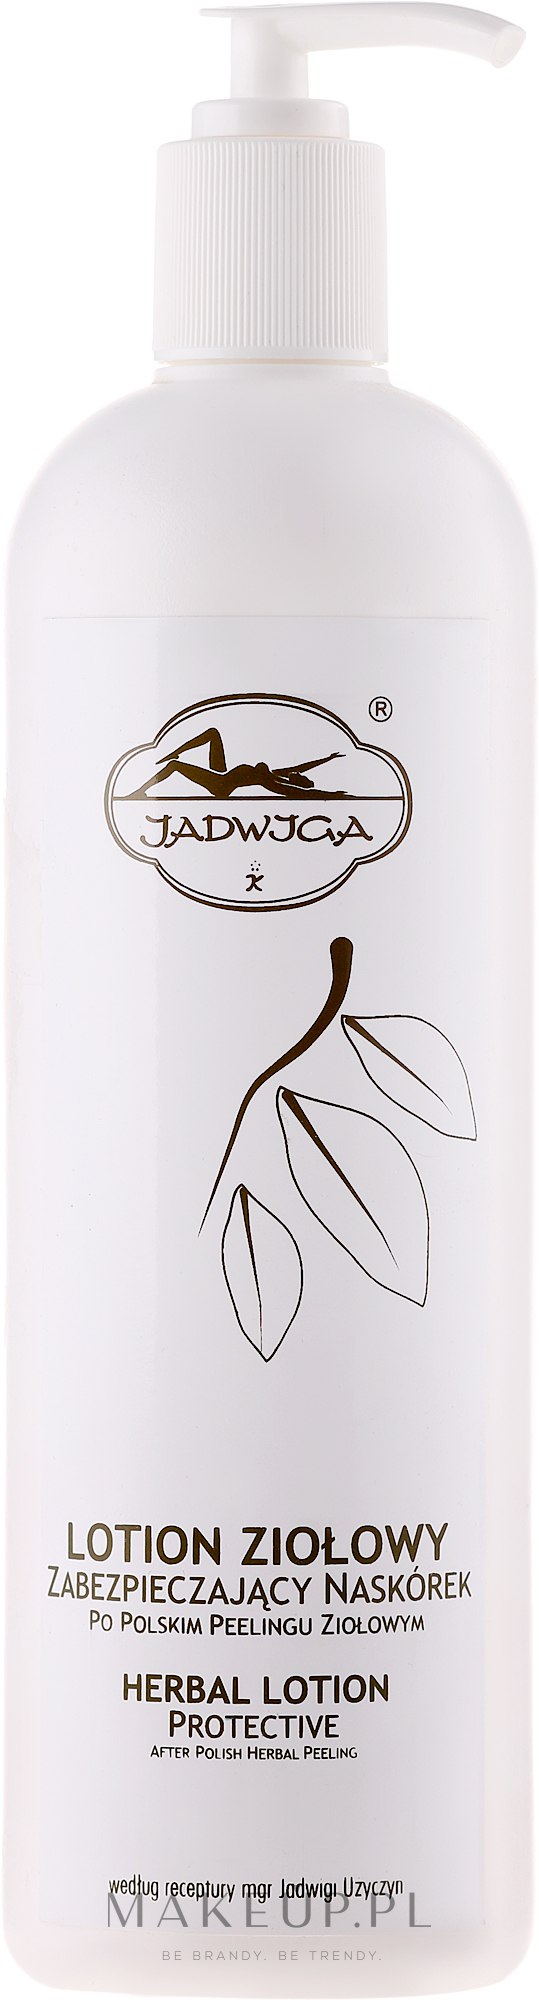 Ziołowy lotion zabezpieczający naskórek po polskim peelingu ziołowym - Jadwiga — Zdjęcie 500 ml